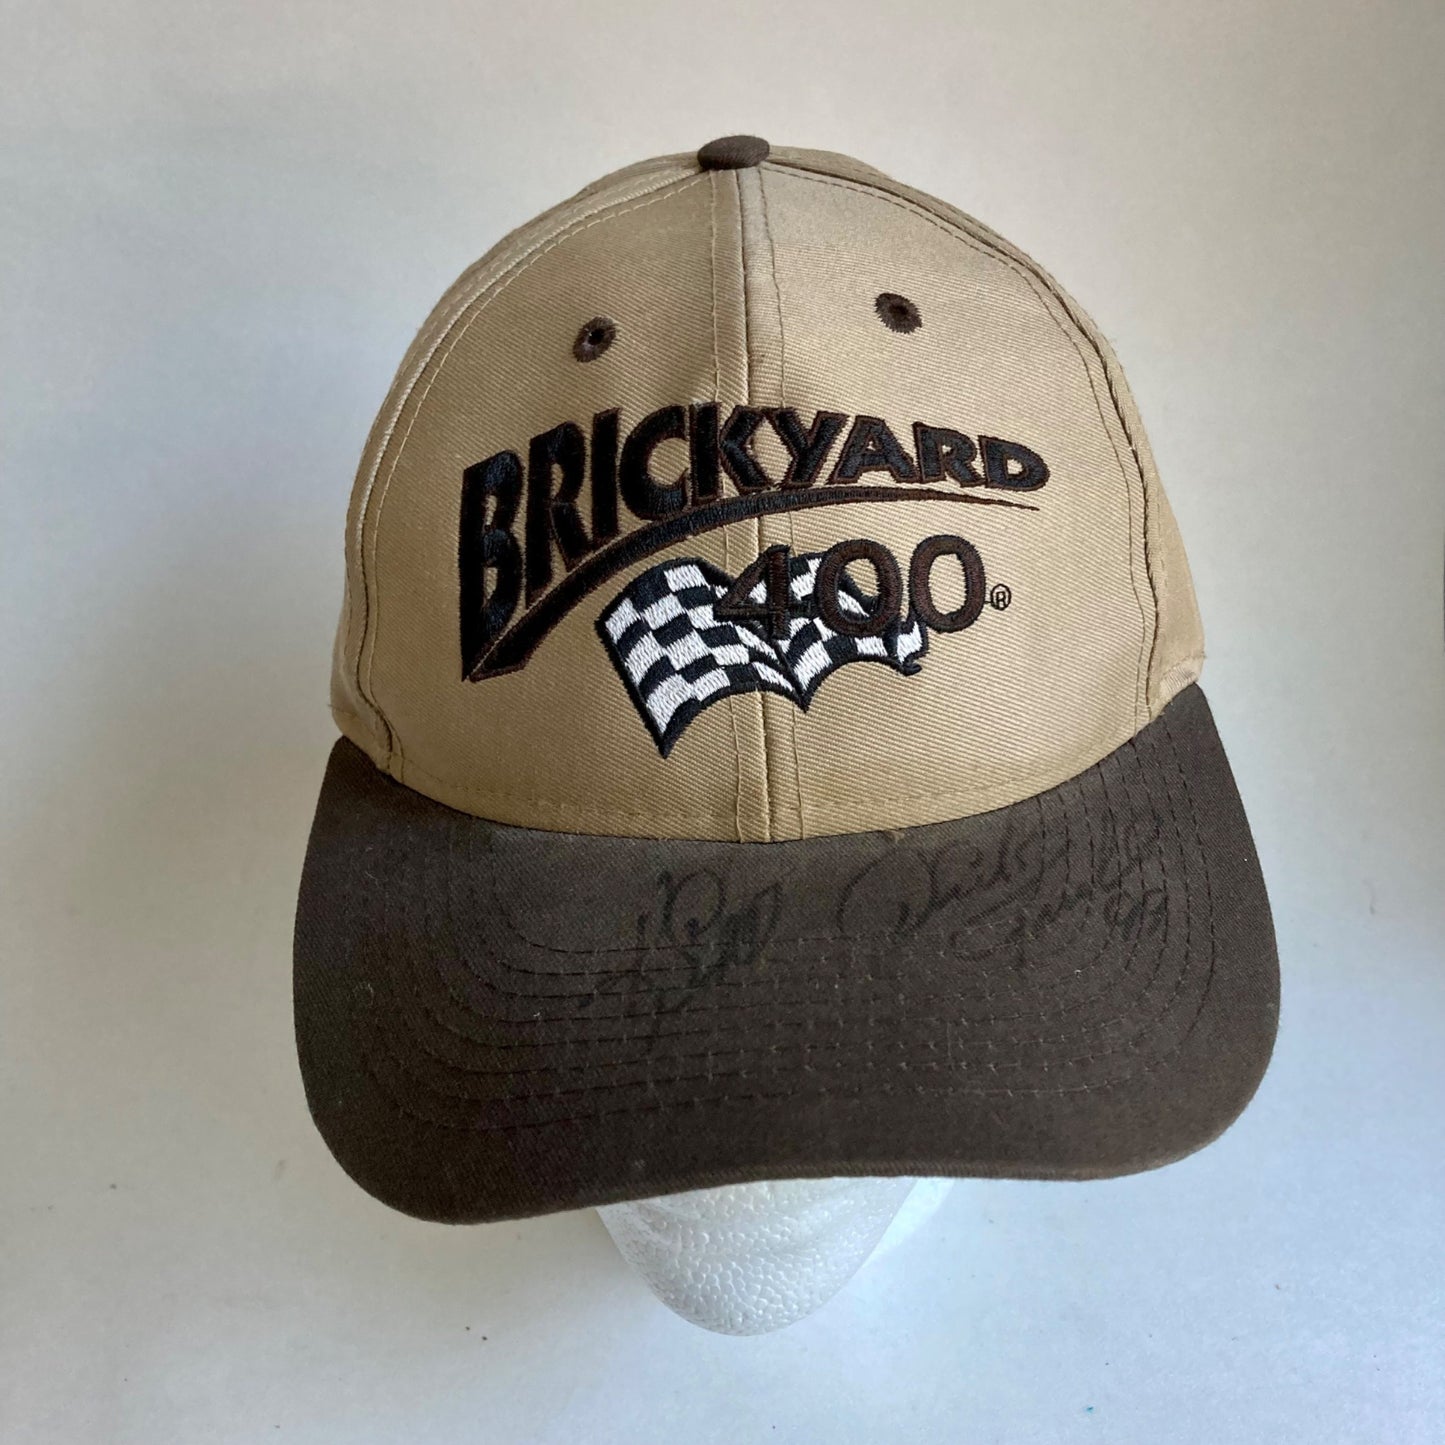 Vintage Brickyard 400 Ken Schrader Signed Hat NASCAR Autographed